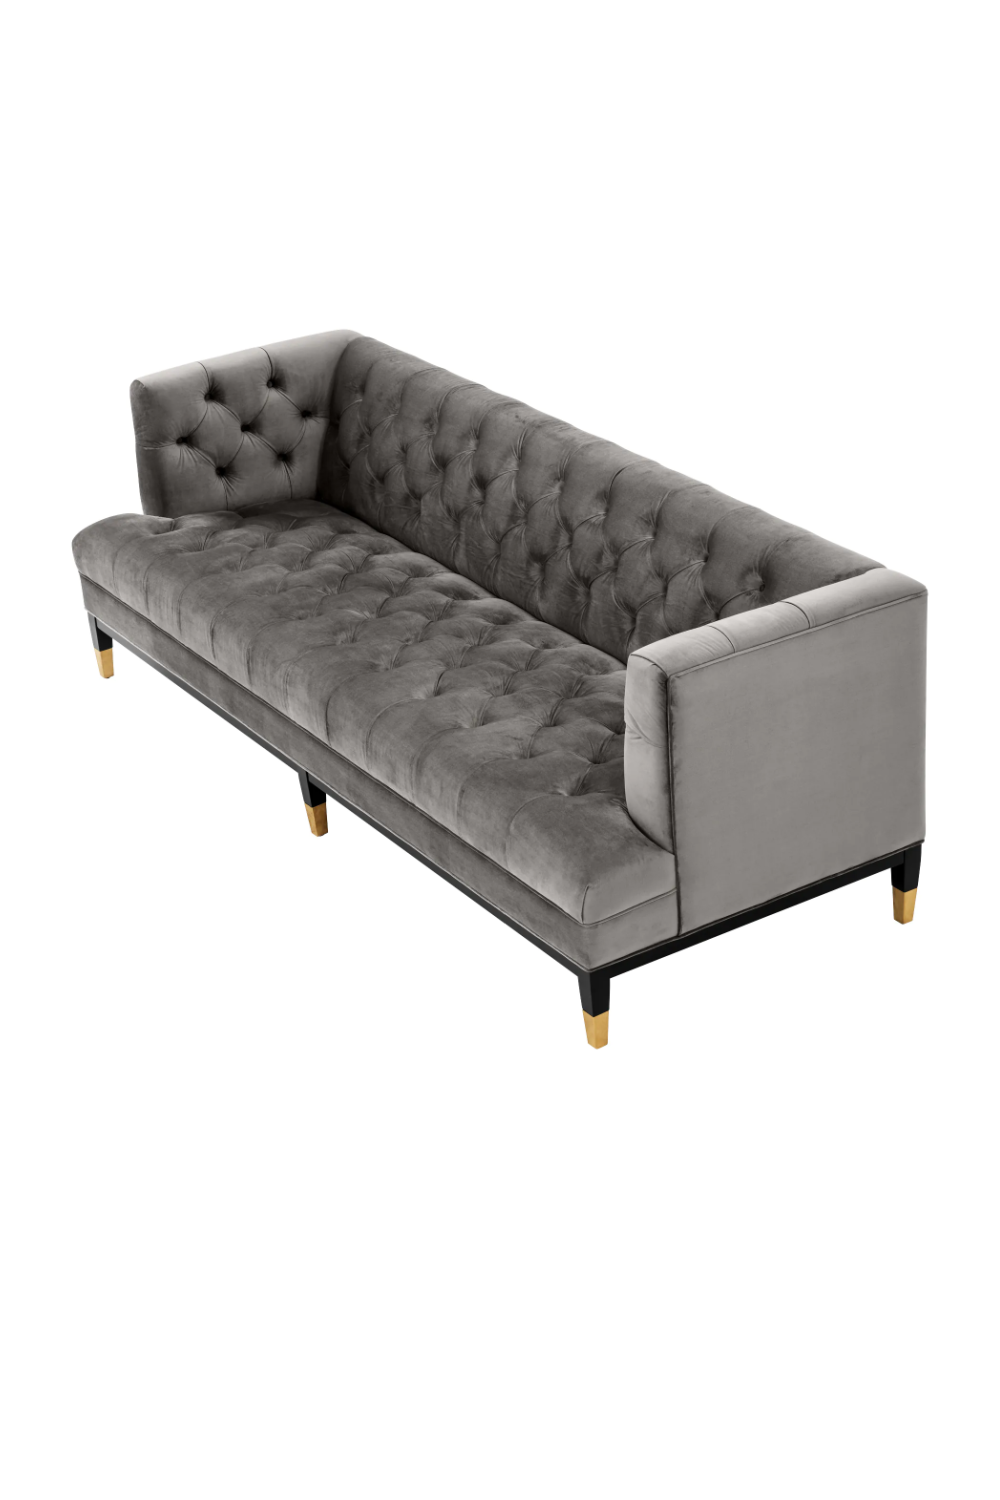 Gray Velvet Modern Chesterfield Sofa | Eichholtz Castelle | Oroa.com